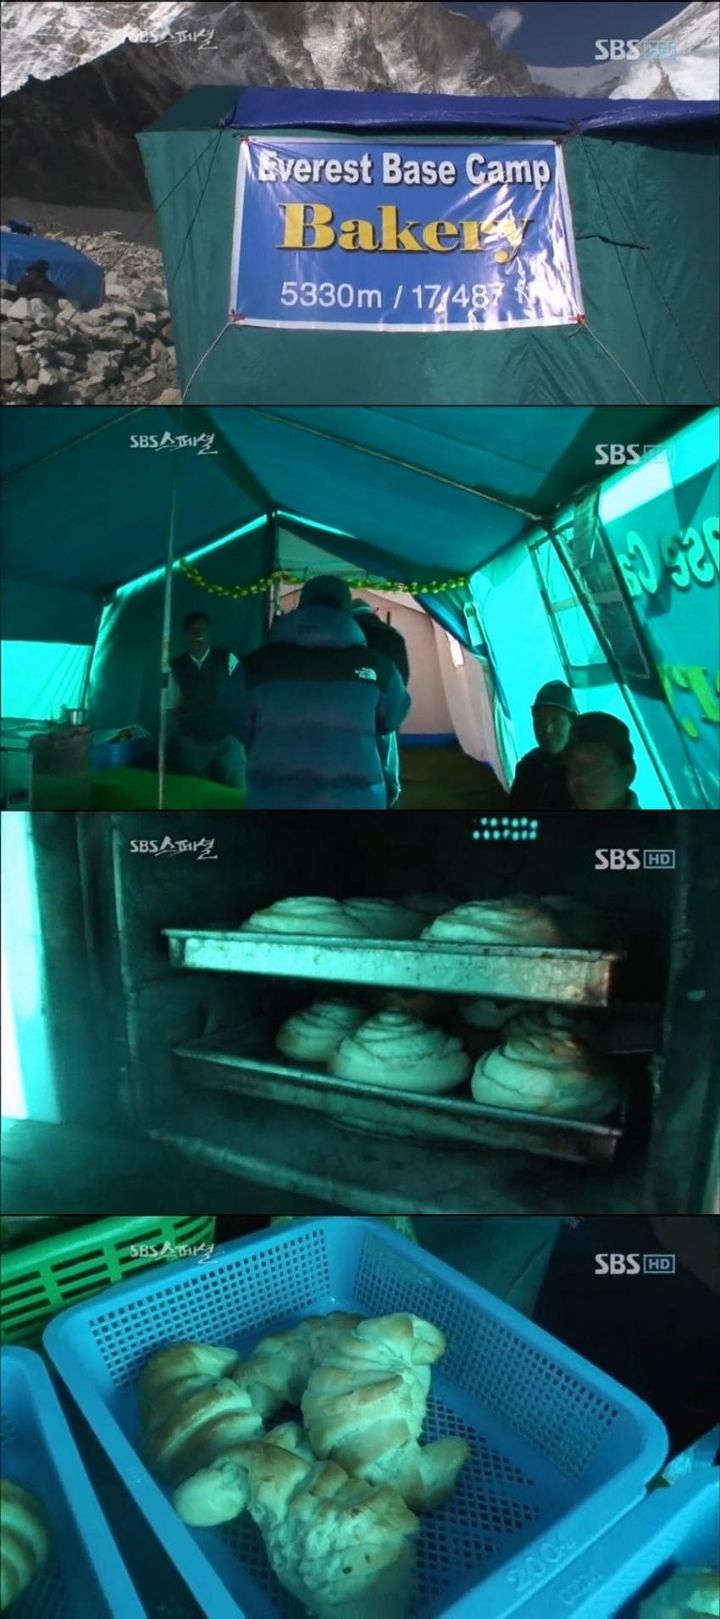 해발고도 5300m 에서 만드는 빵 가격.jpg